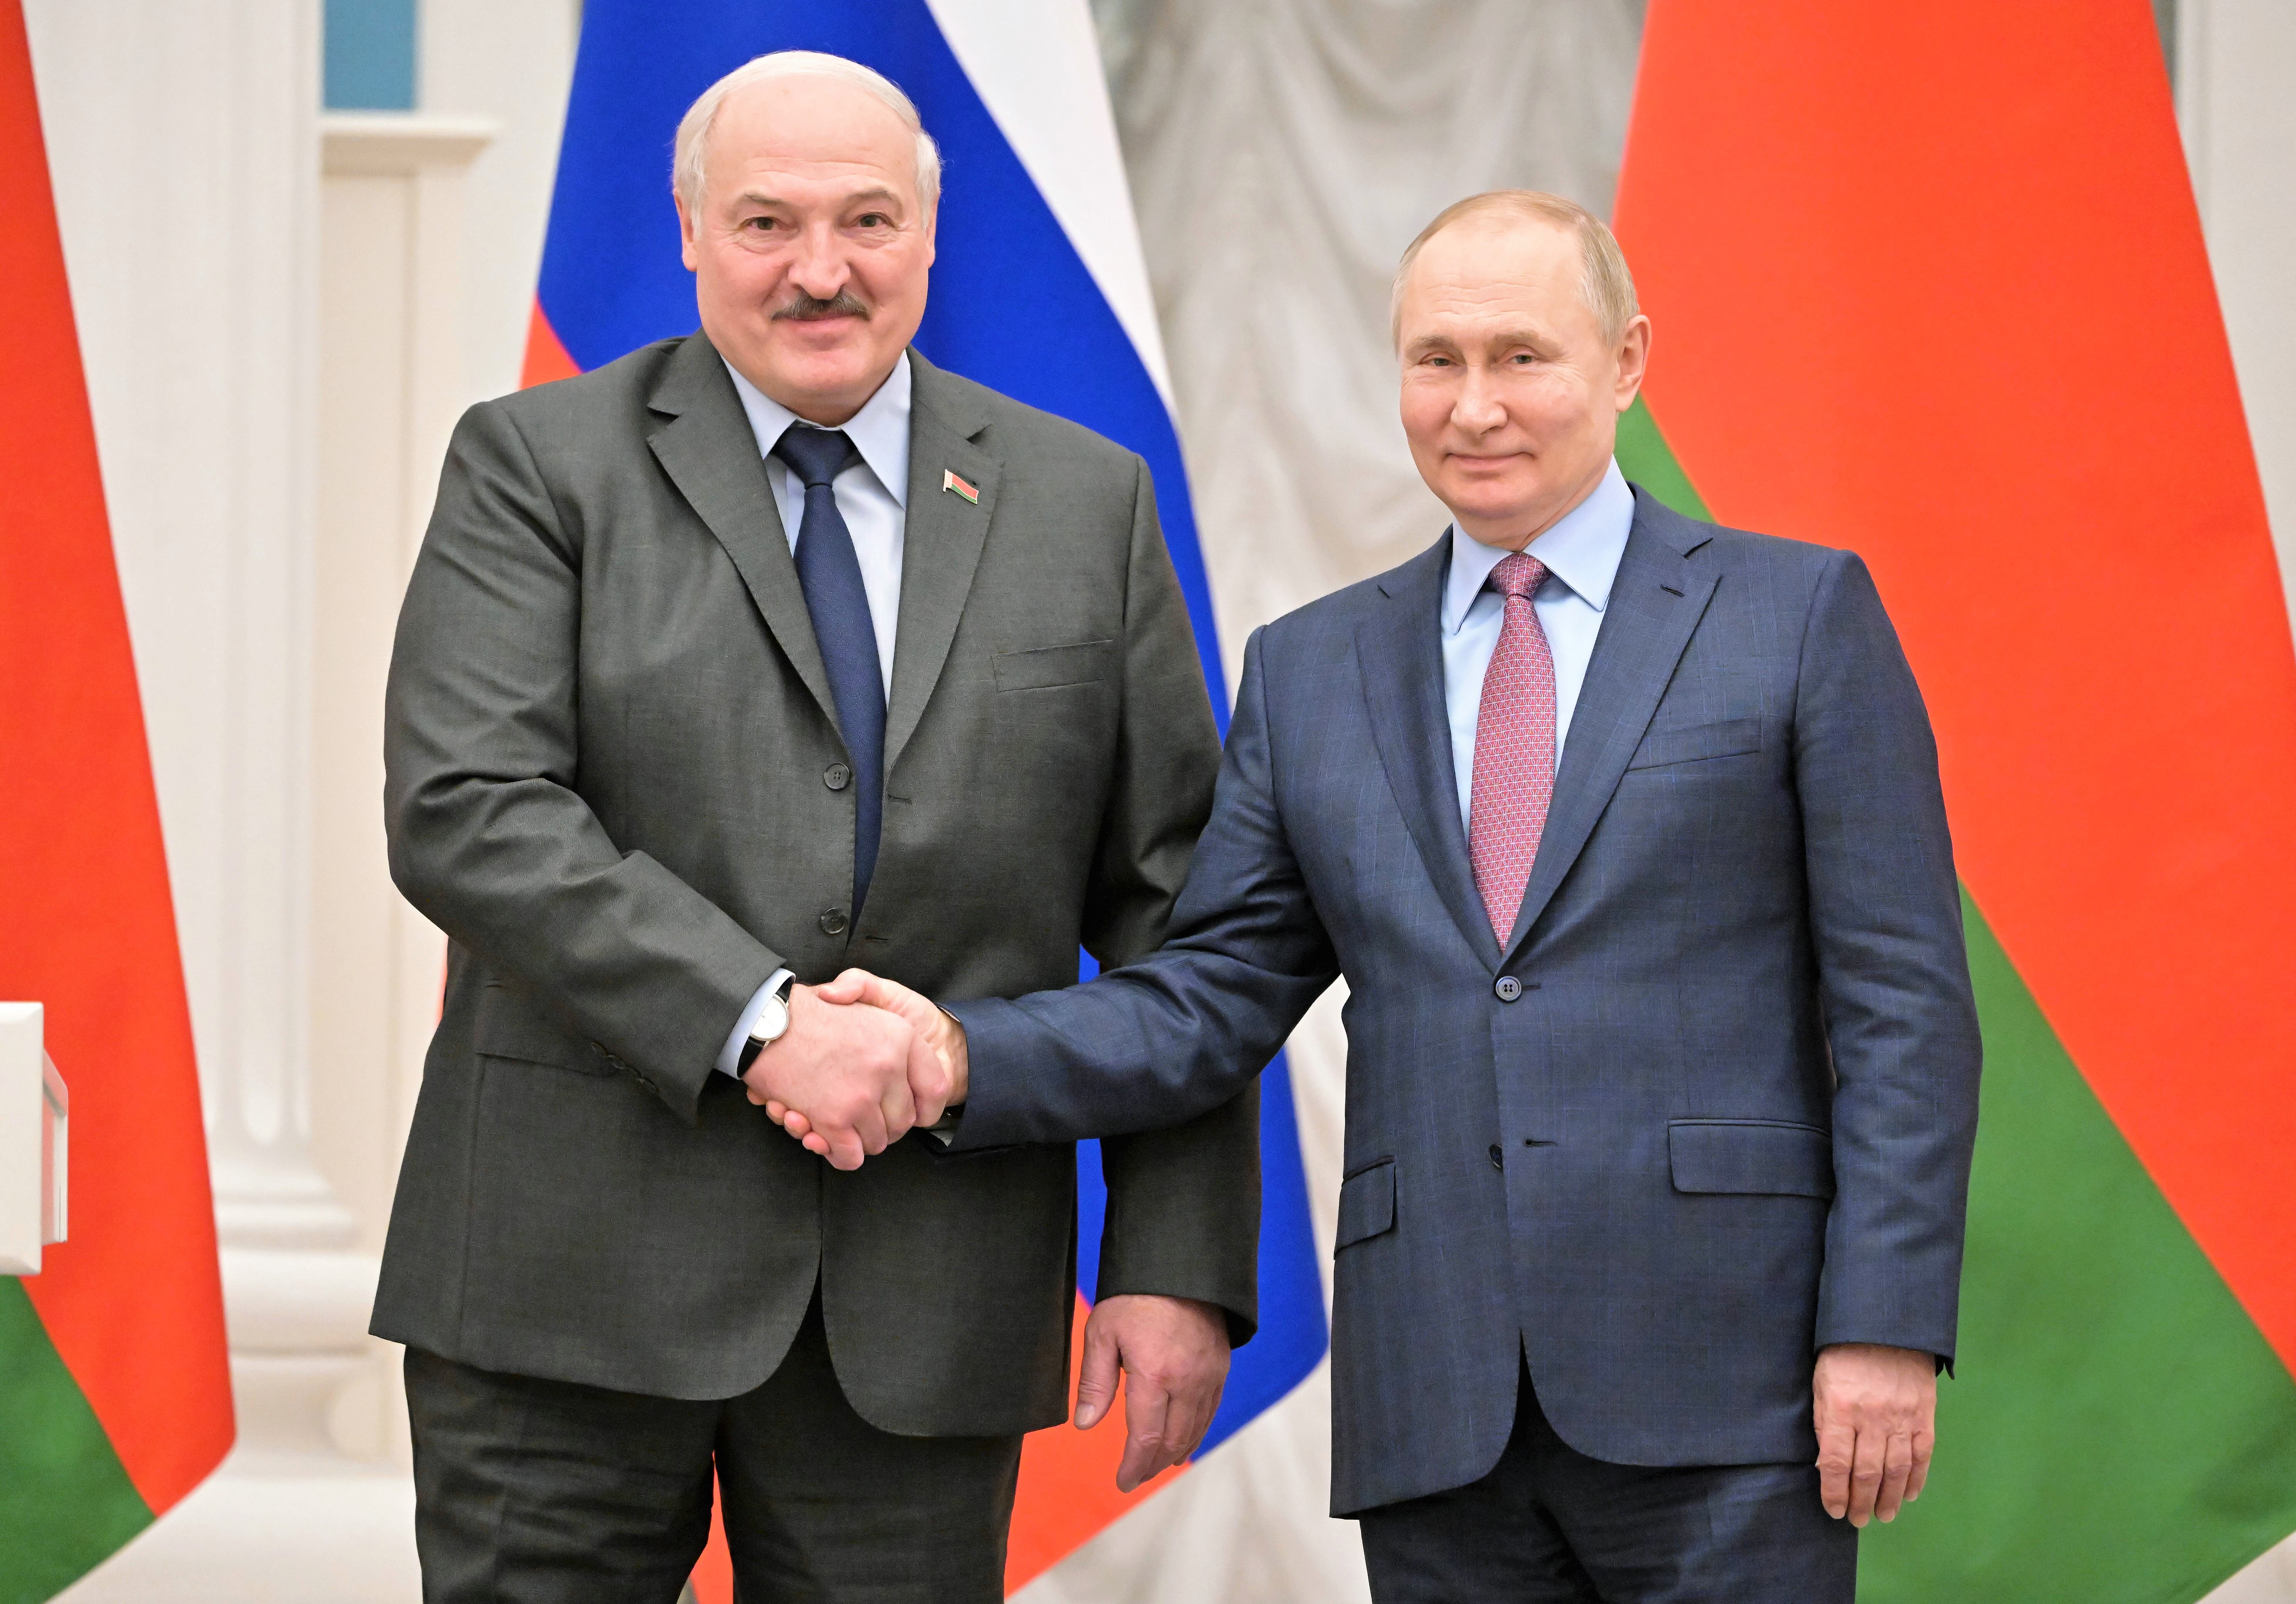 Haftbefehl gegen Putin - die Angst der Kreml Verbündeten wächst! Bricht Putins Kartenhaus jetzt ein?